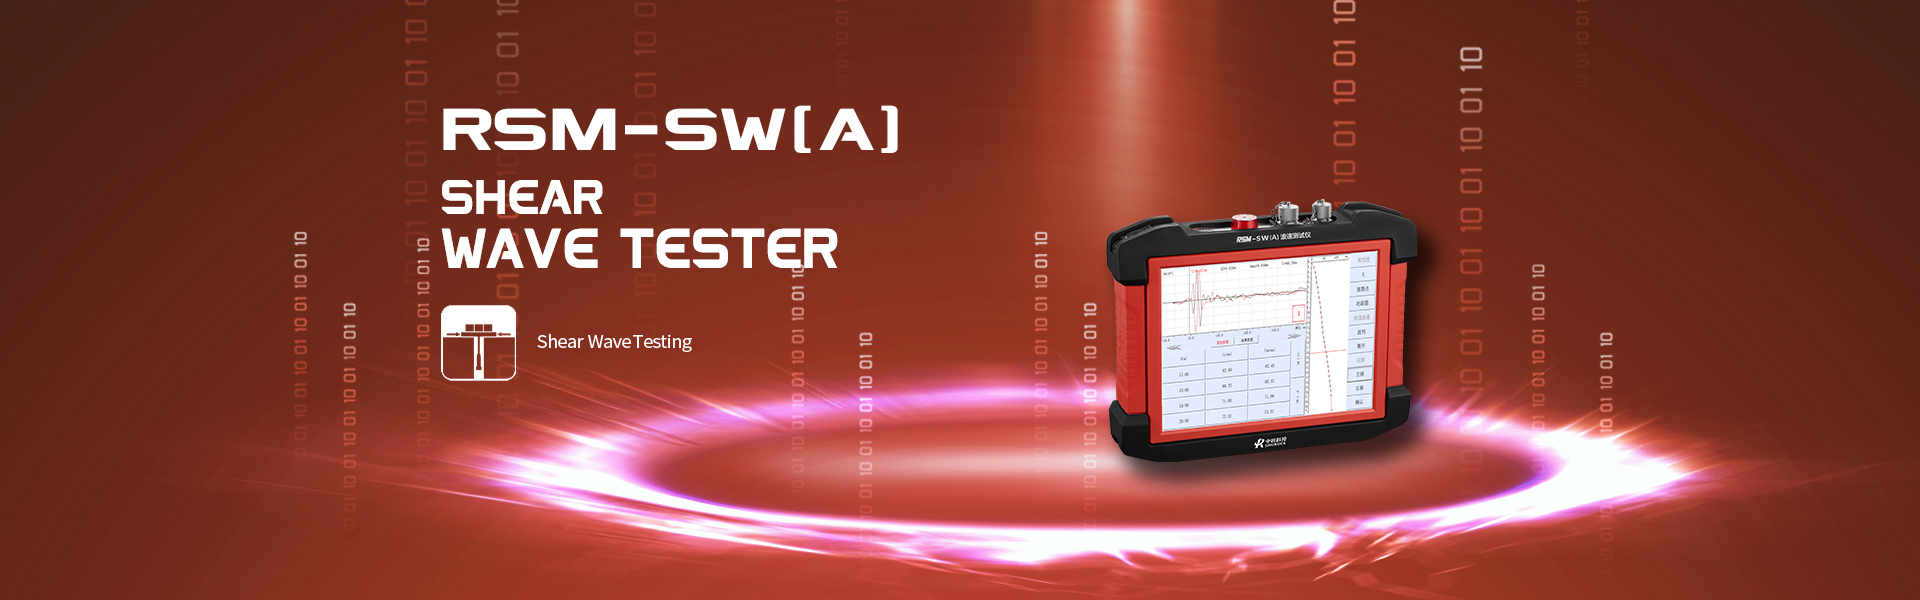 RSM-SW(A) Shear Wave Tester